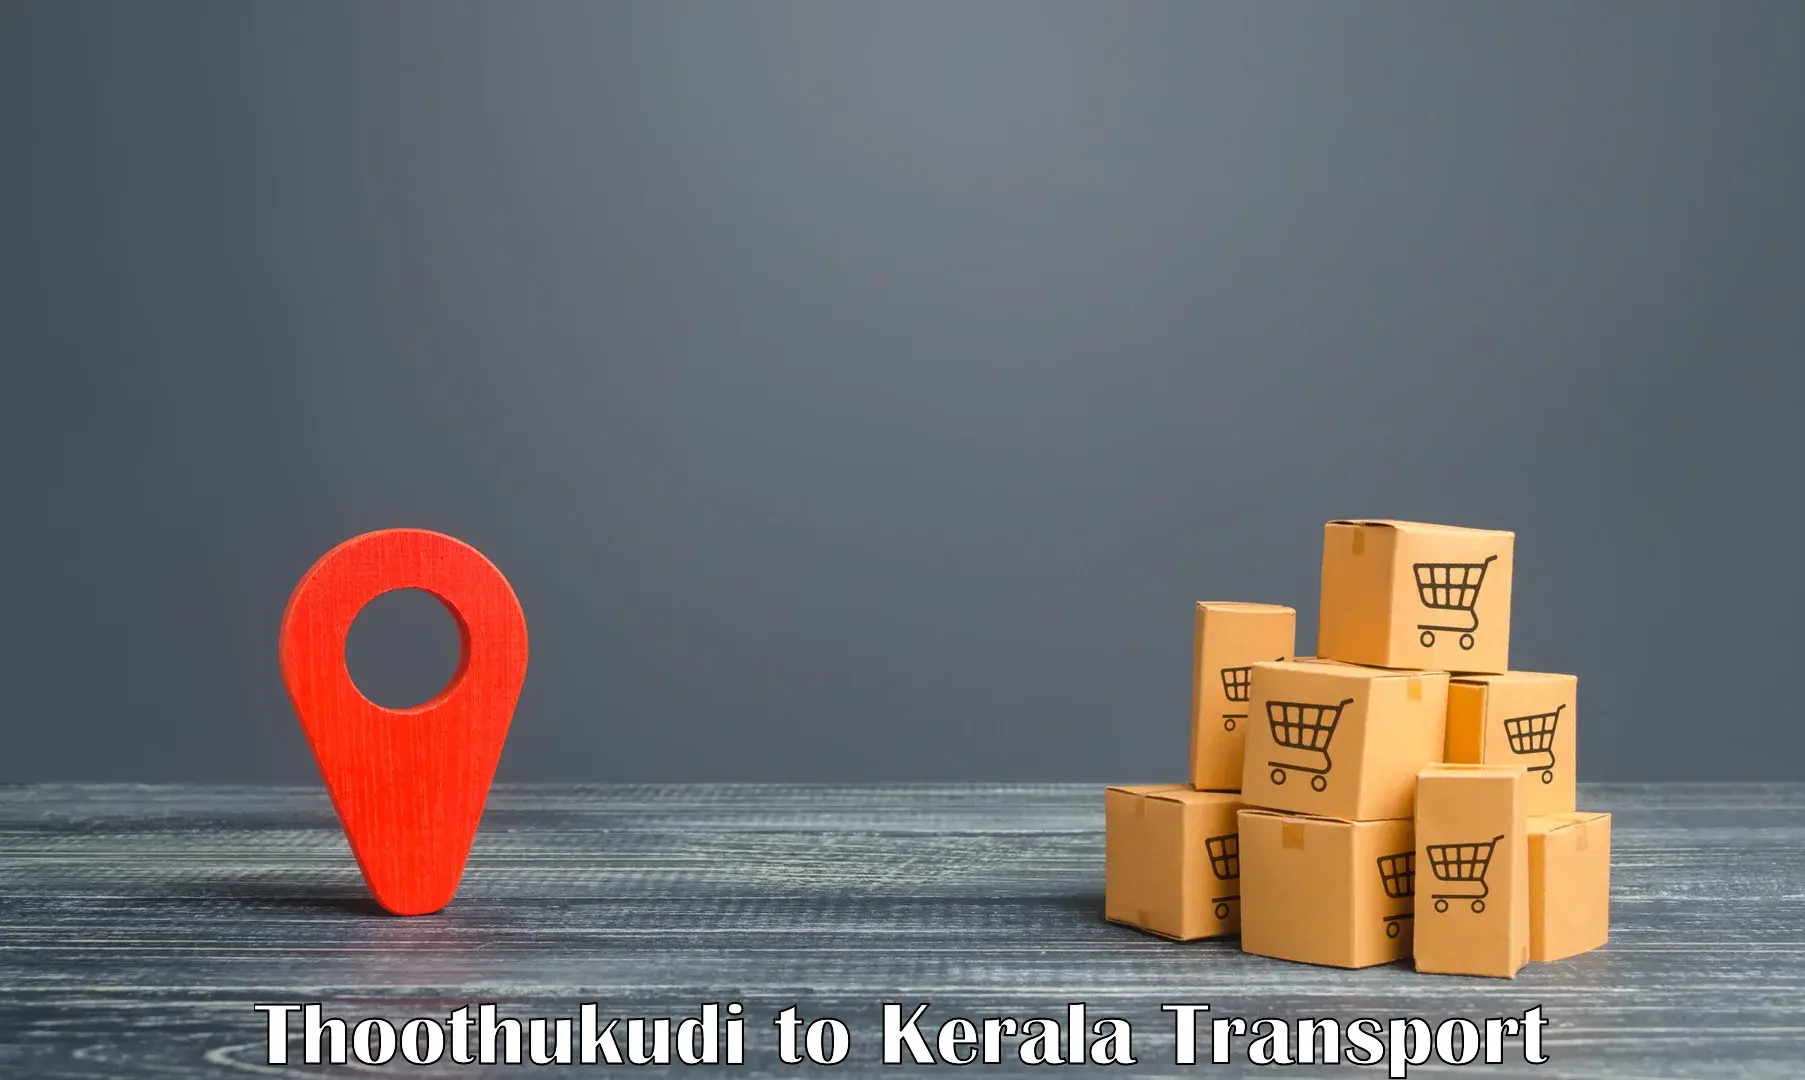 Online transport service Thoothukudi to Perambra